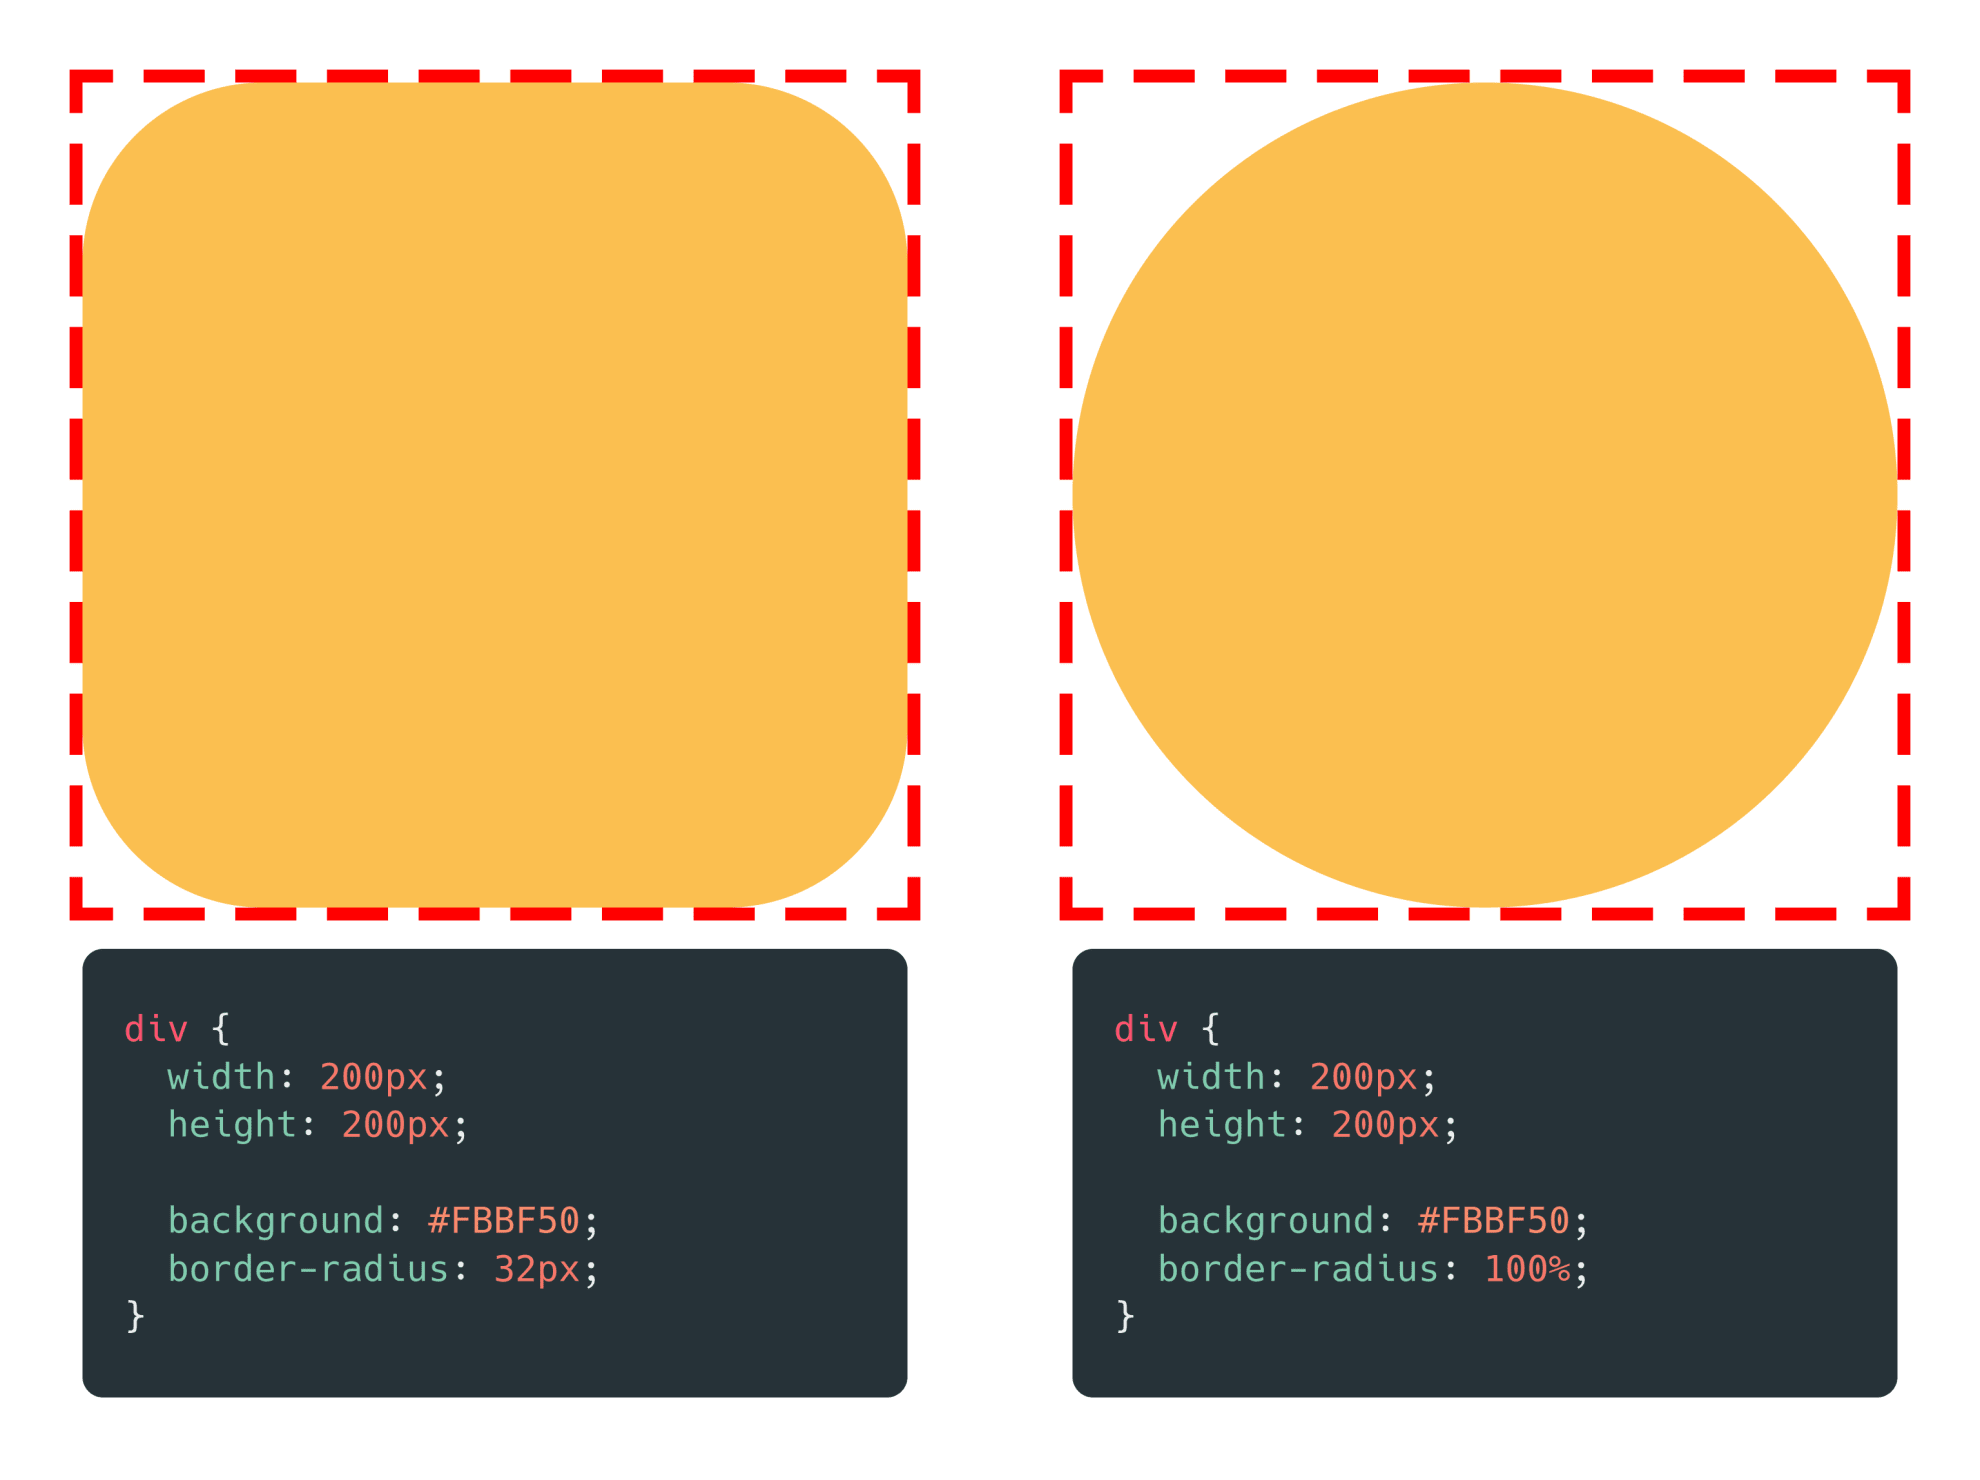 dalawang HTML div element, parehas na may border-radius. 32px ang isa, at 100% naman ang isa.